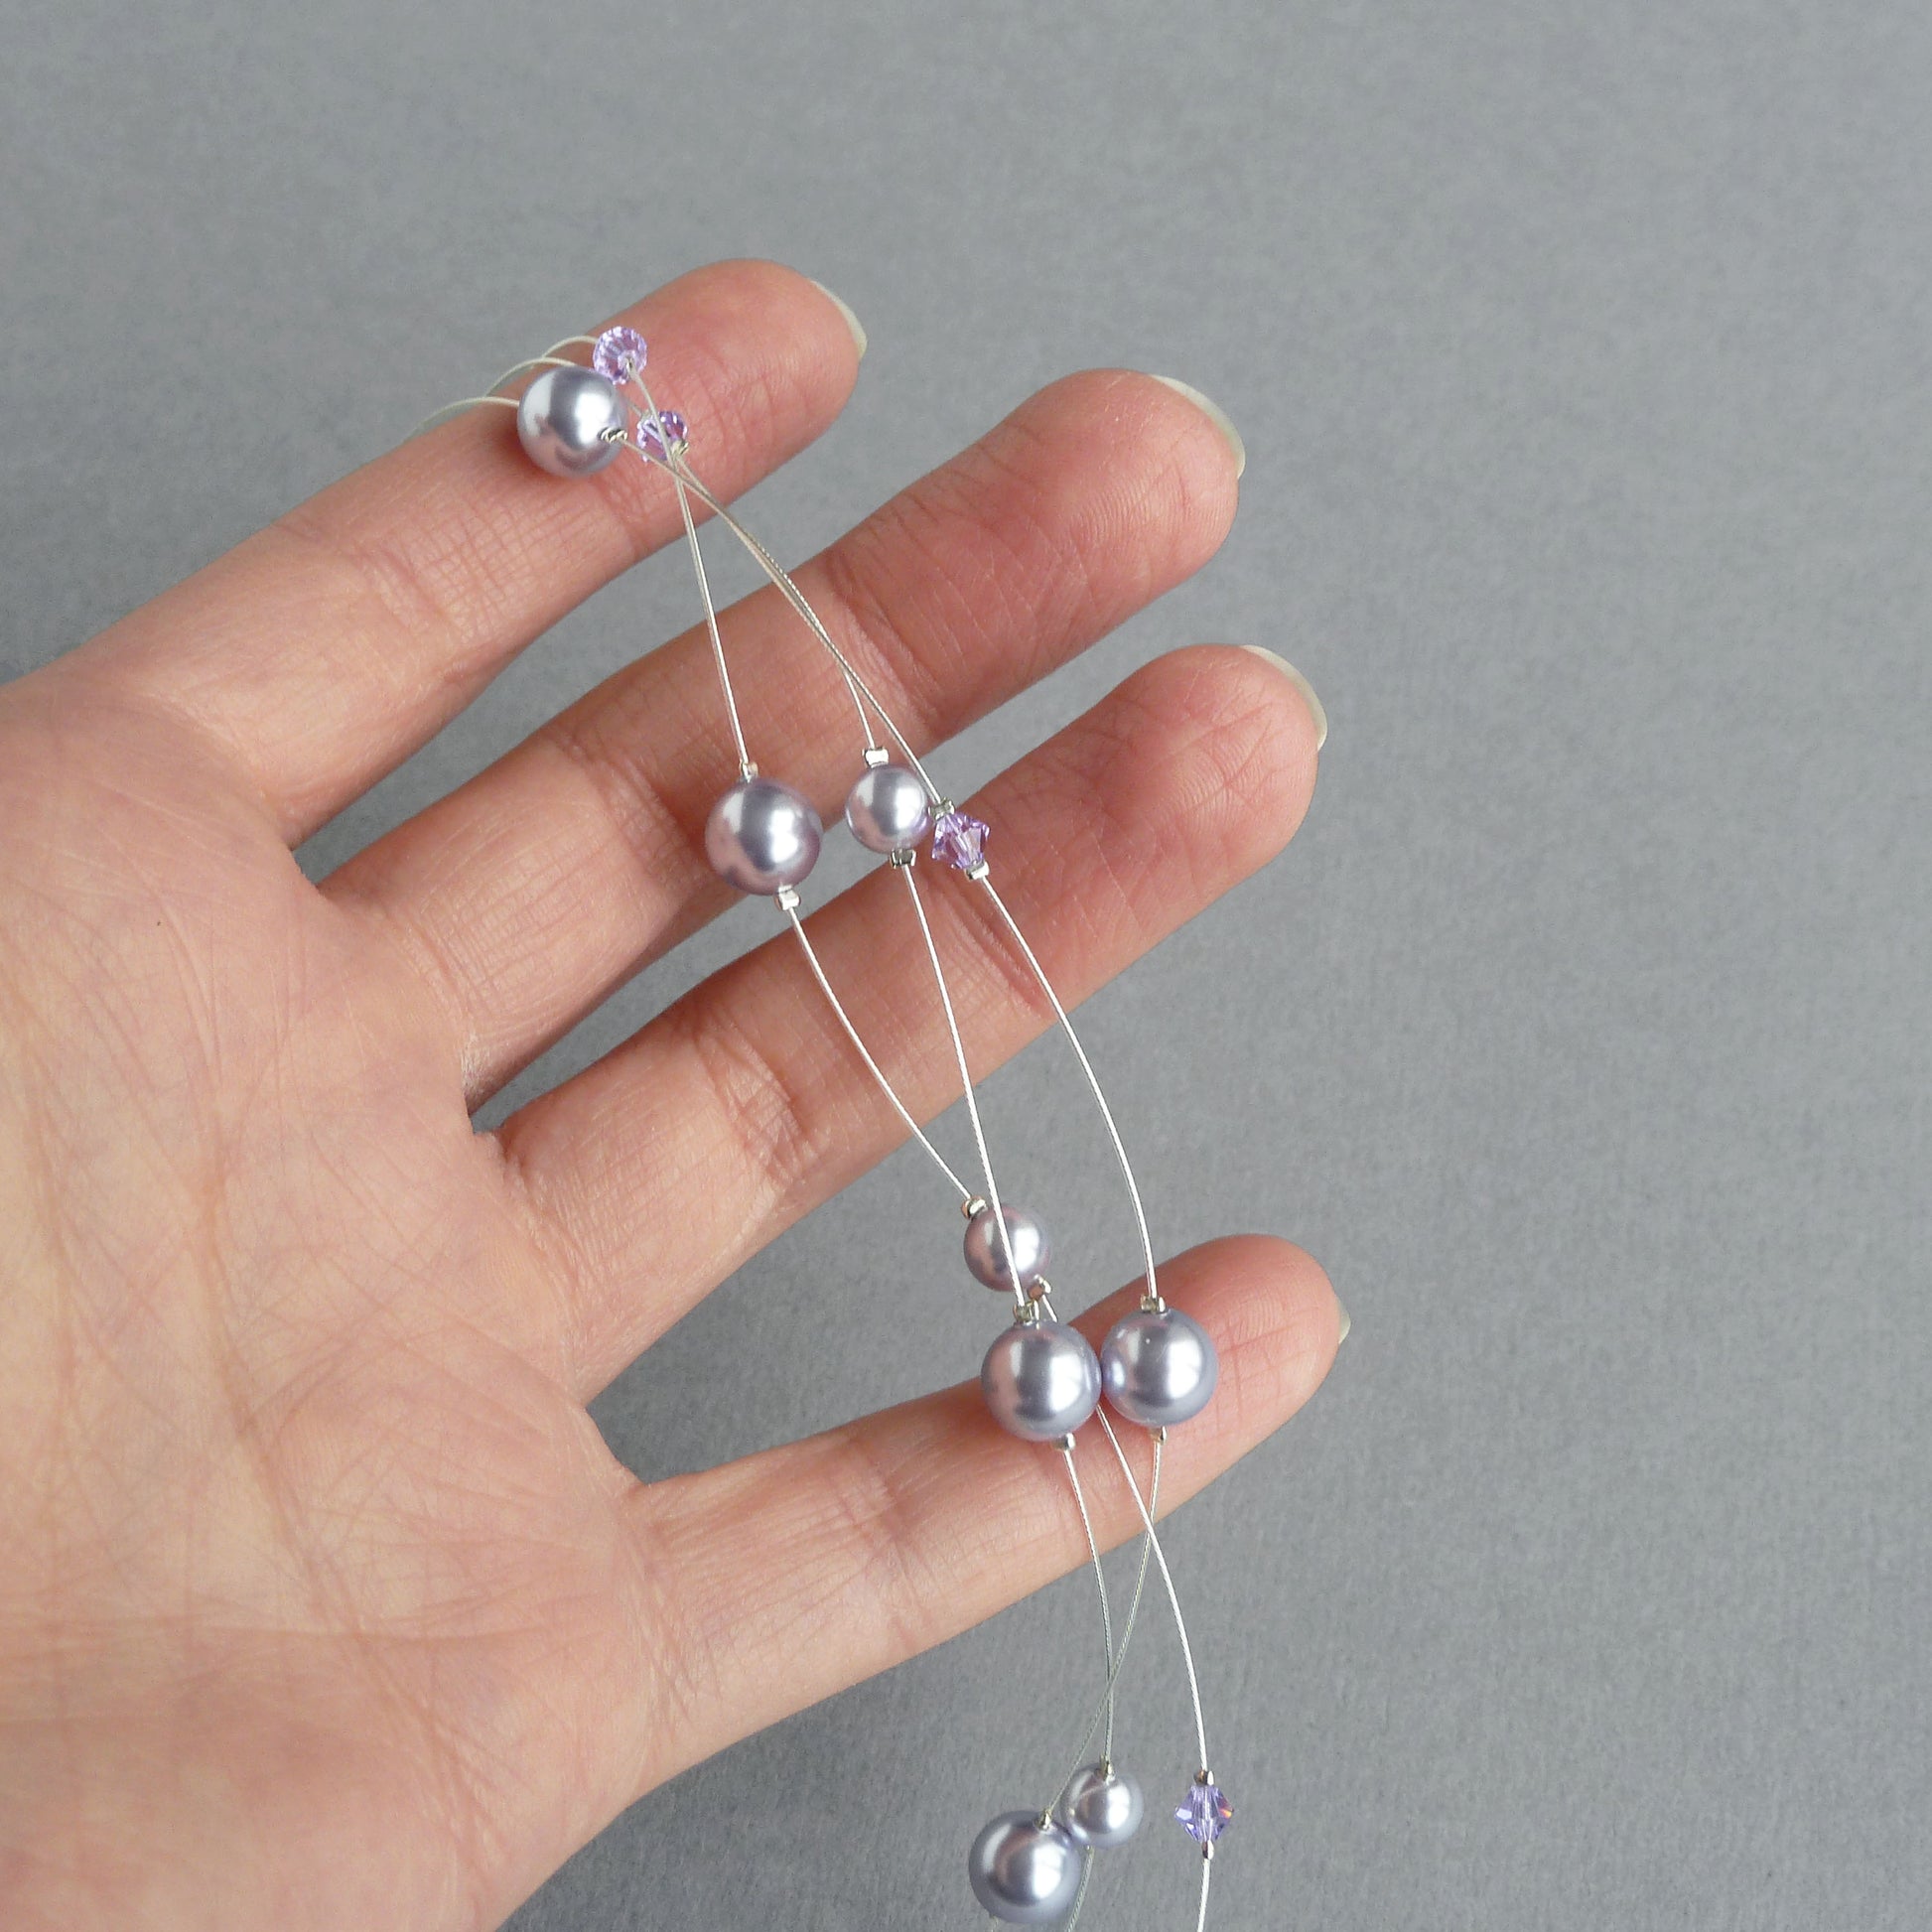 Lavender pearl bridesmaids necklaces